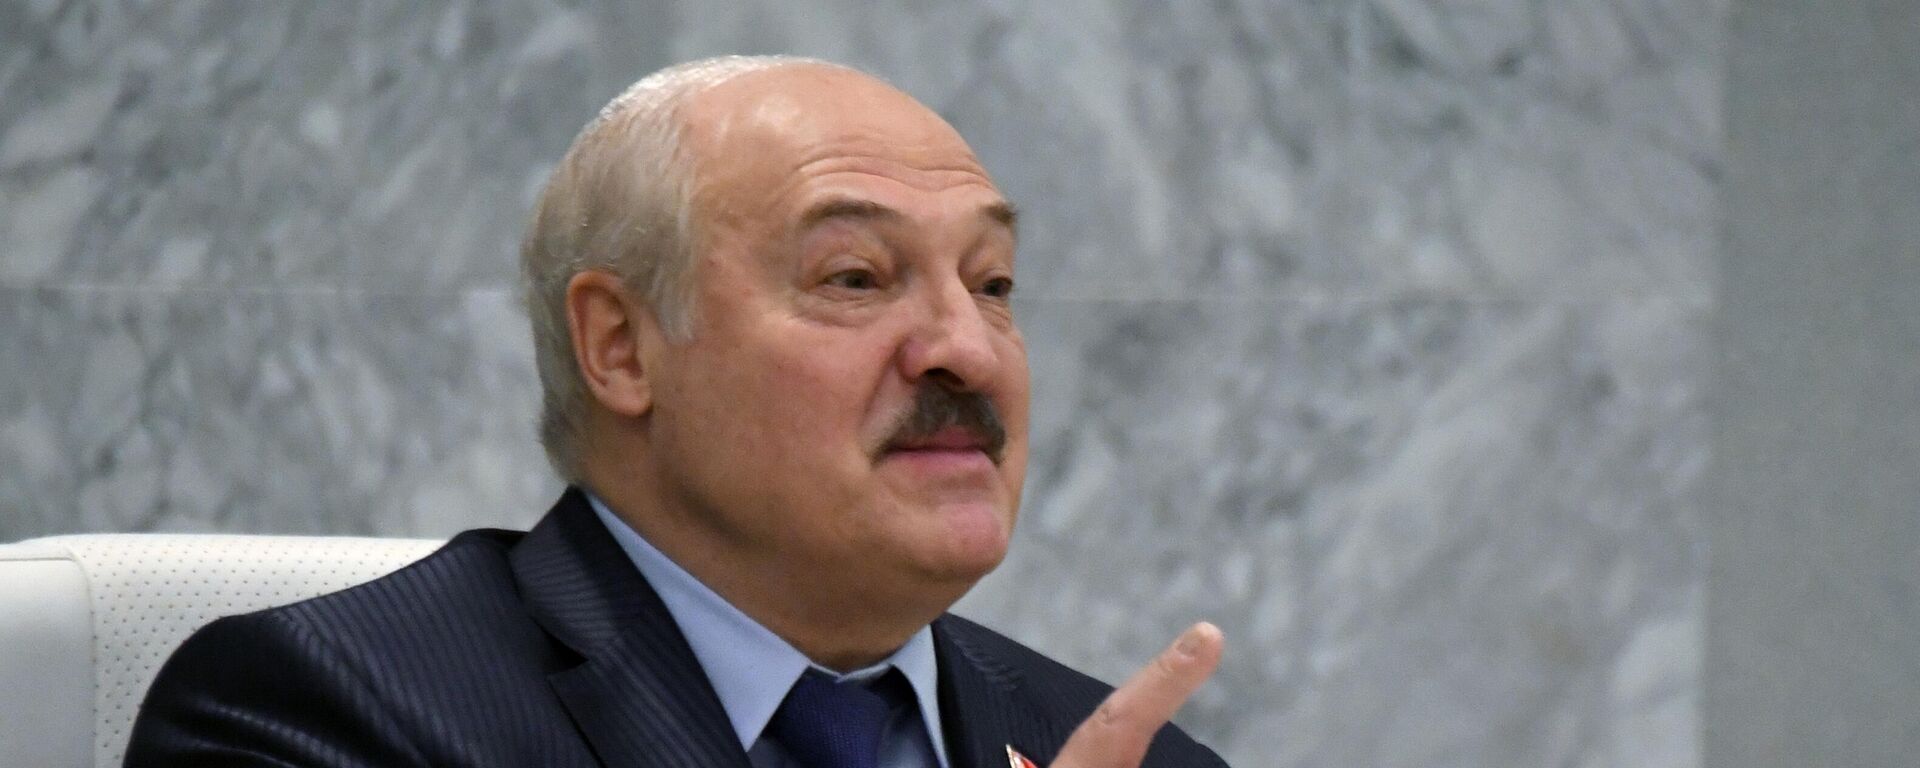 Alexandr Lukashenko, el presidente de Bielorrusia - Sputnik Mundo, 1920, 16.02.2023